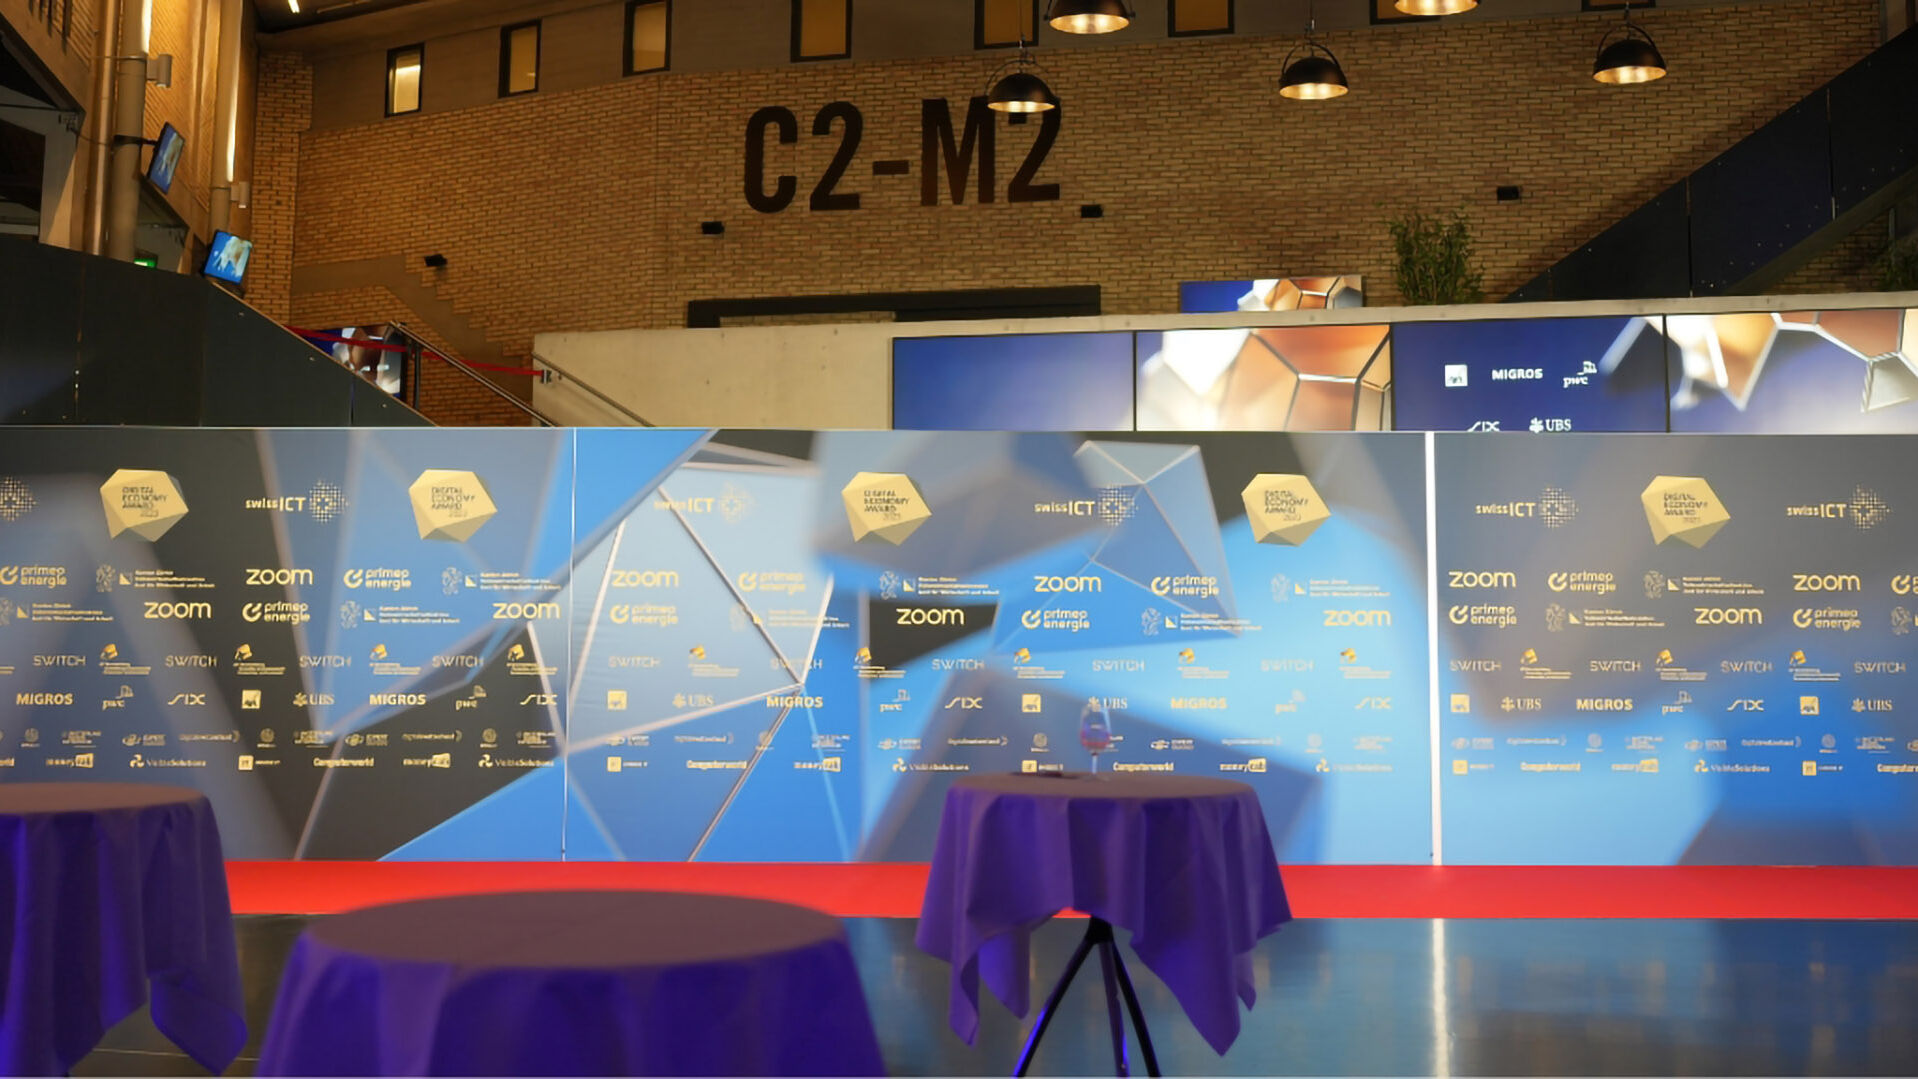 Digitālās ekonomikas balva: apbalvošanas ceremonijas fotogalerija Hallenstadion Cīrihē, Šveicē 16. gada 2023. novembrī